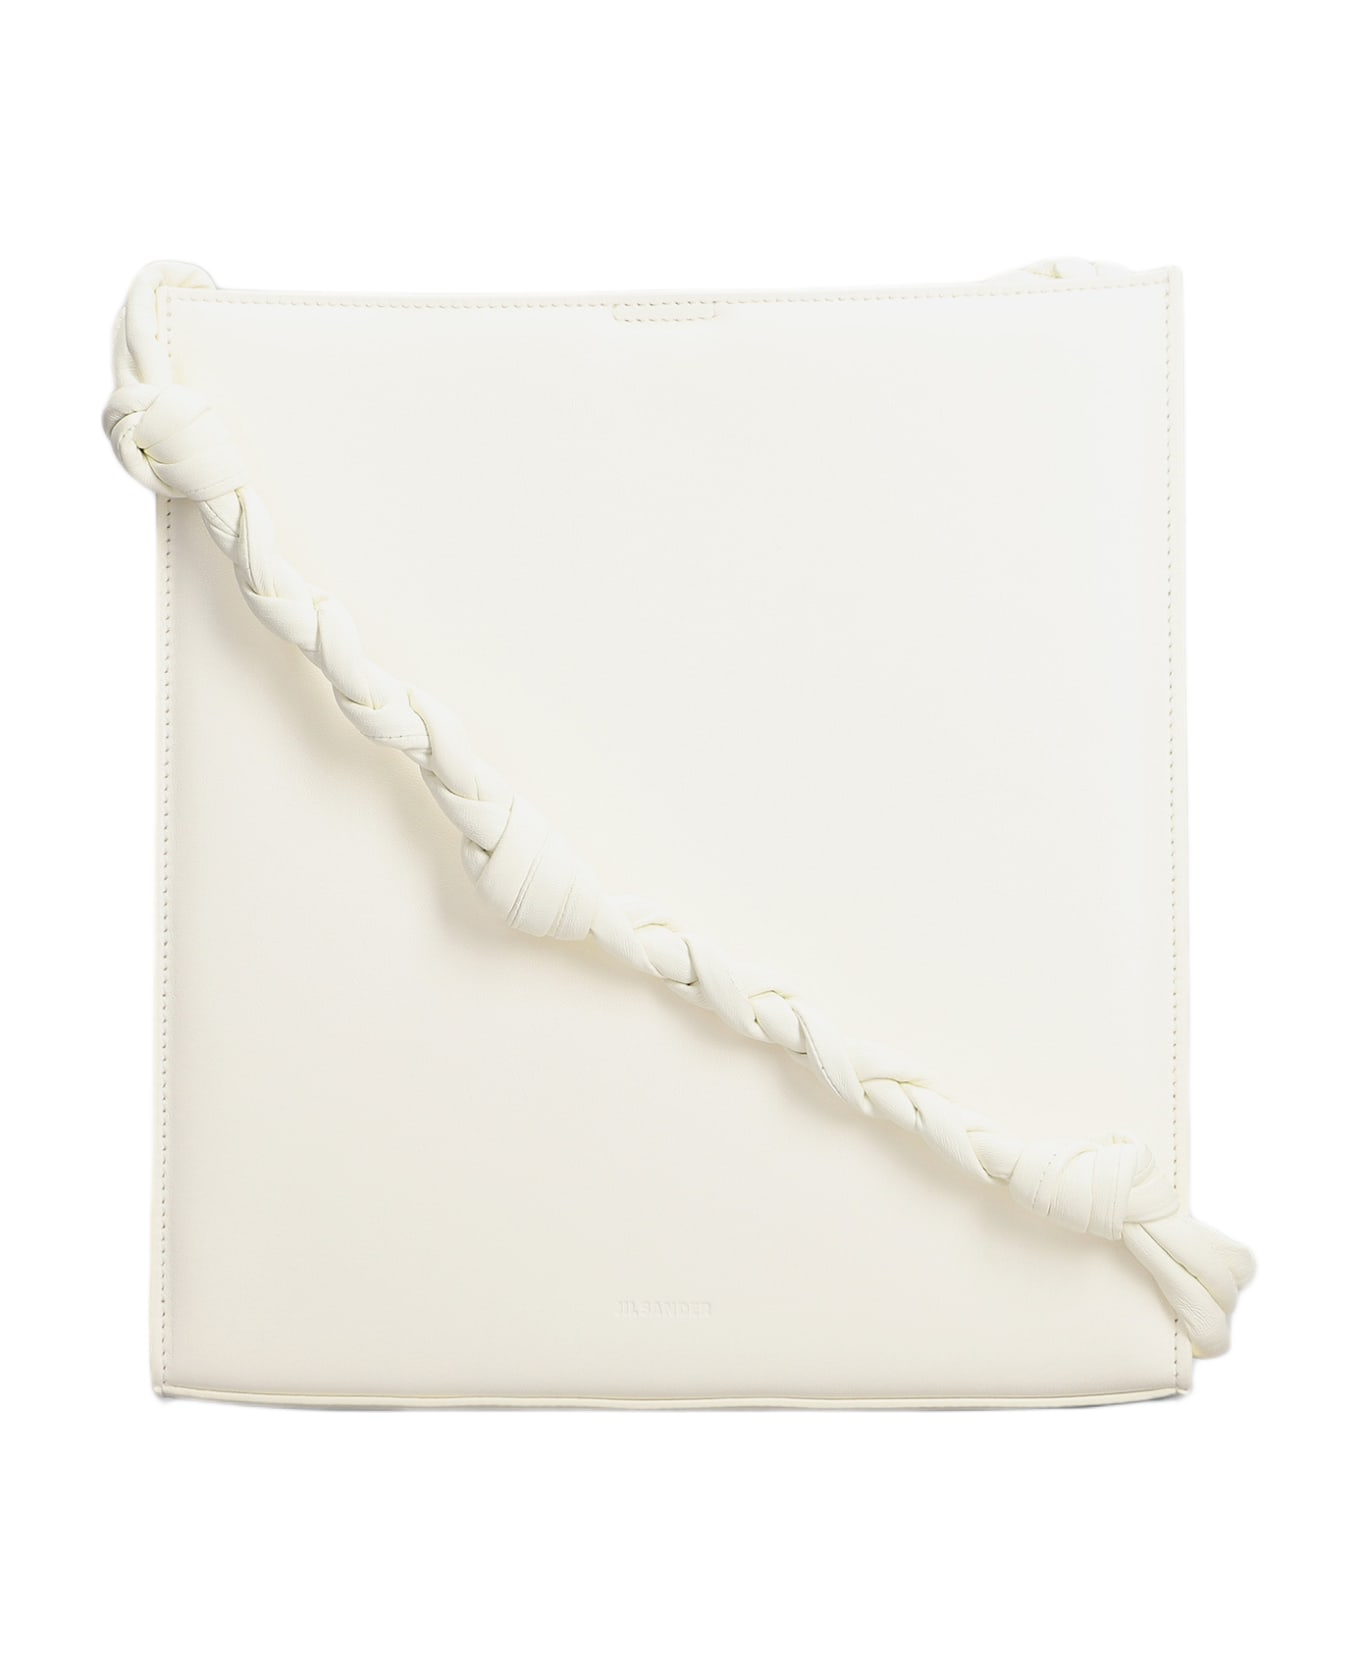 Jil Sander Shoulder Bag In White Leather - Ivory